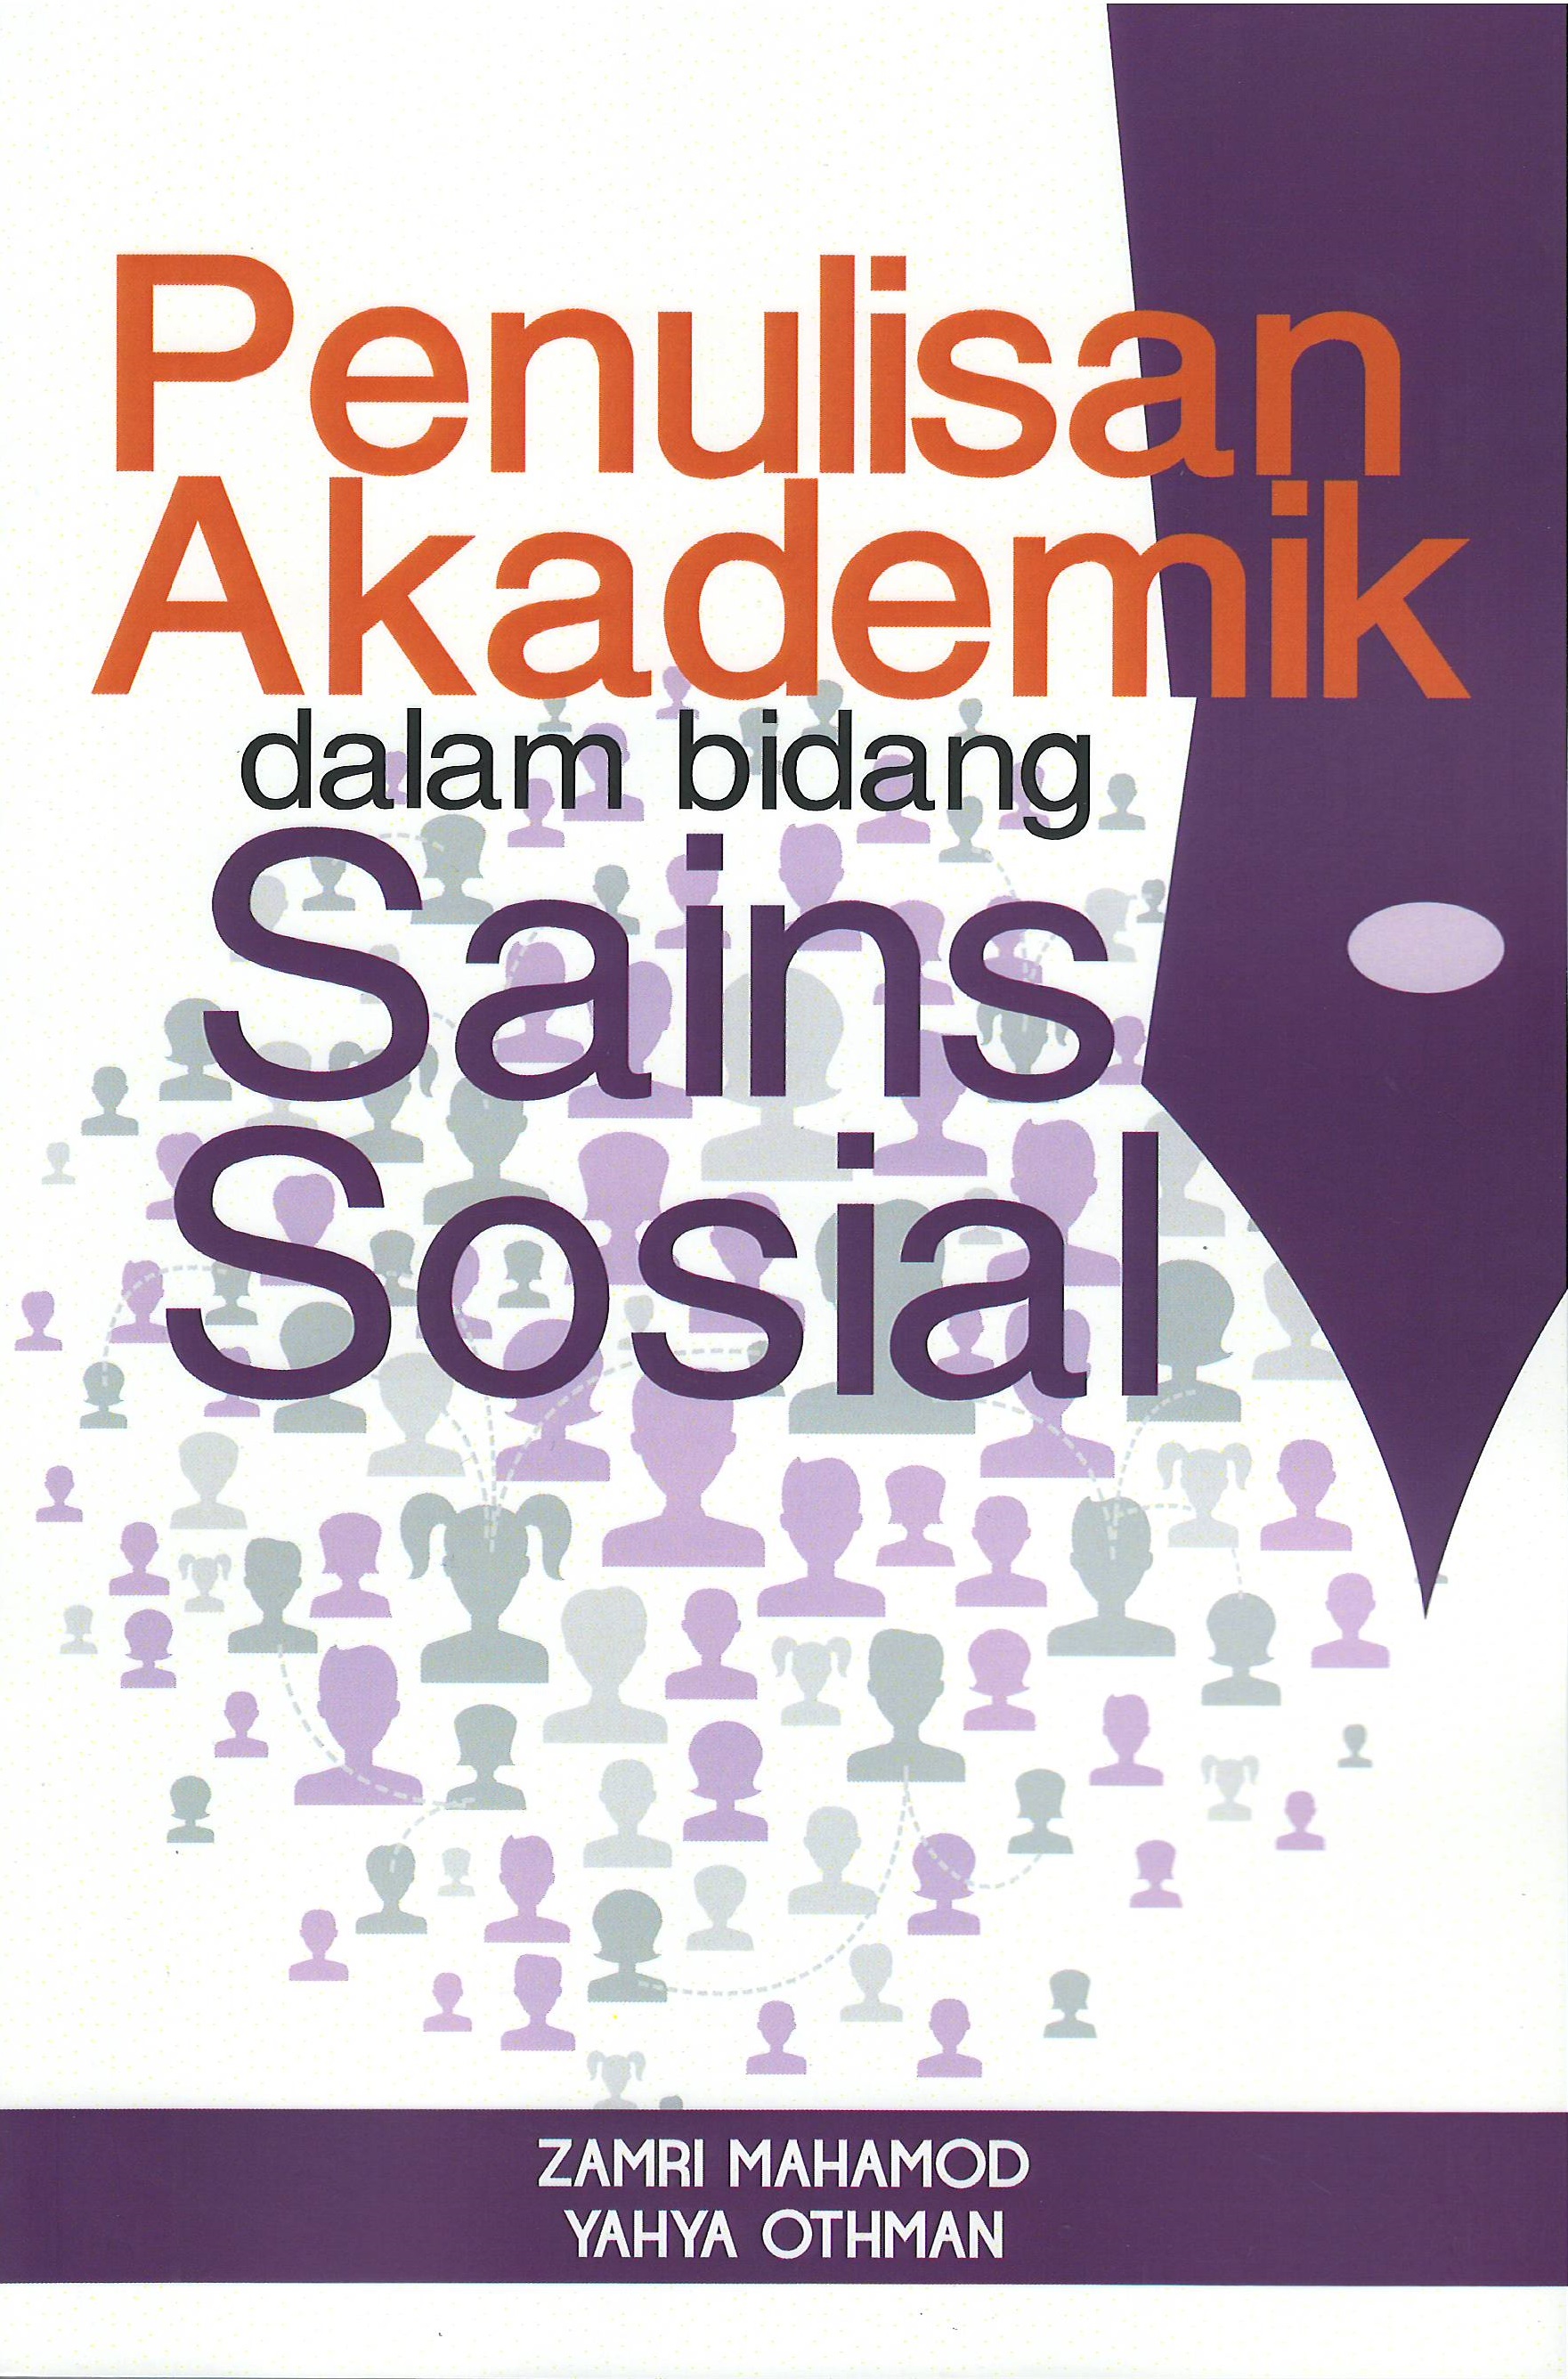 Penulisan Akademik dalam Bidang Sains Sosial (cet.2) - Malaysia's Online Bookstore"